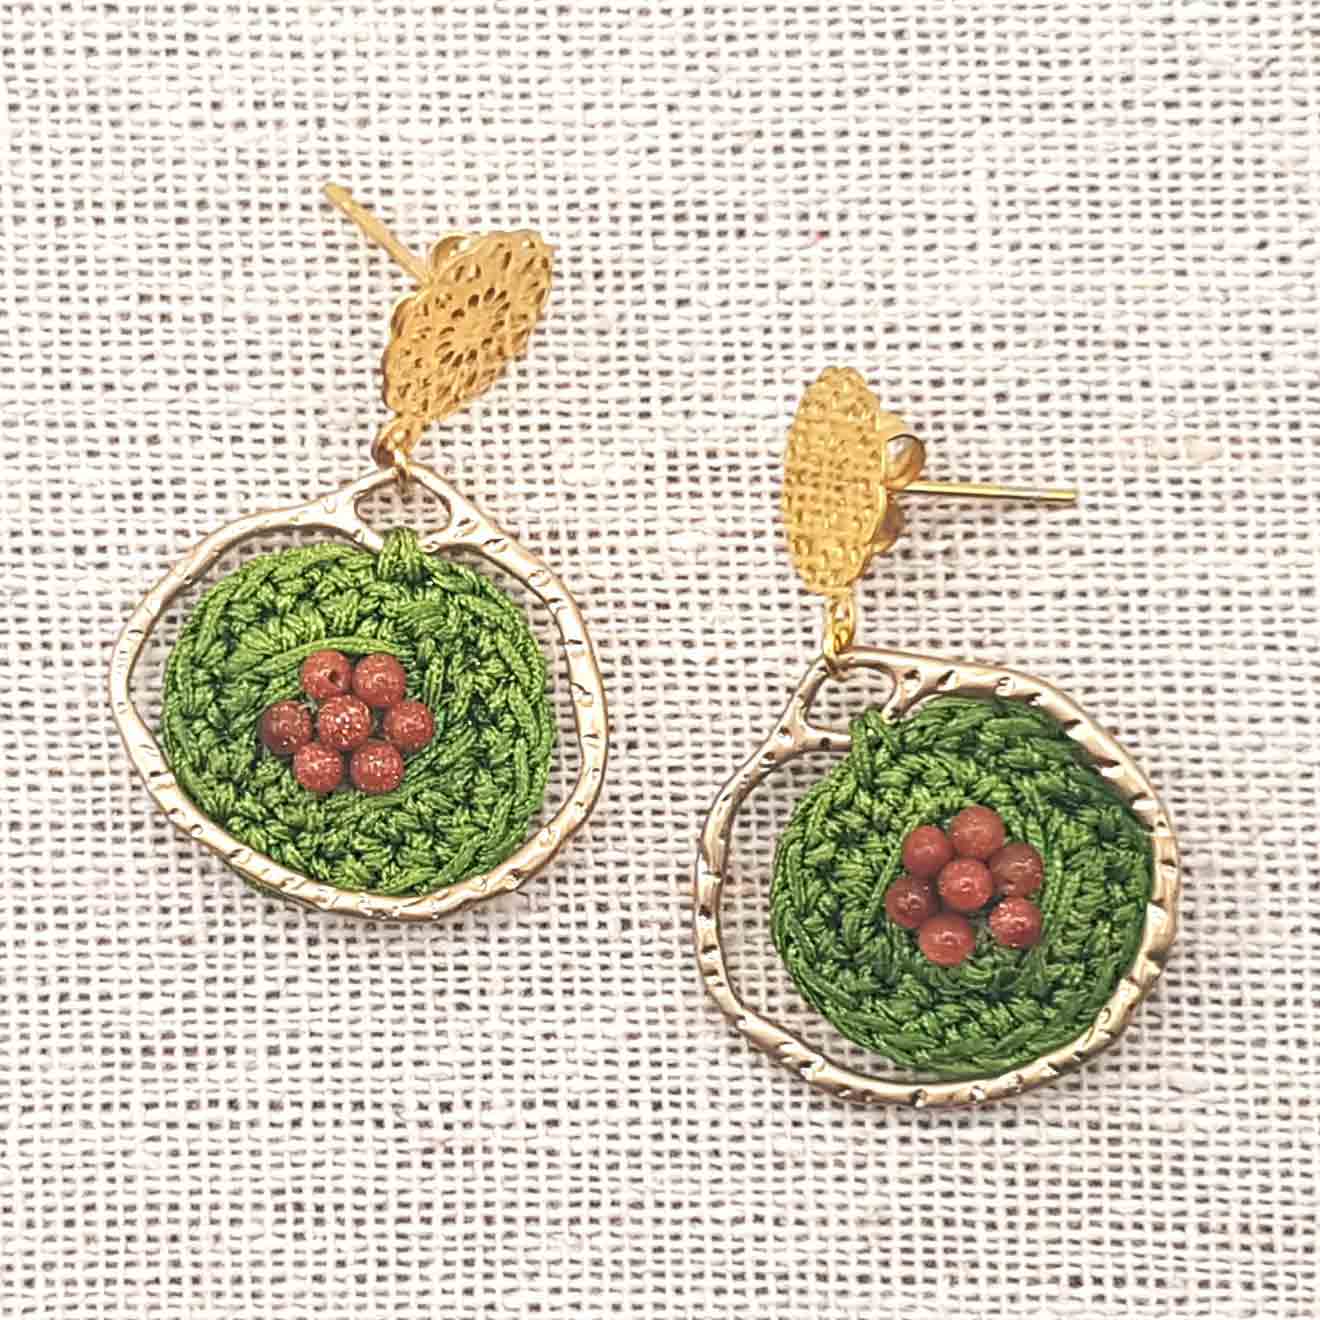 Bijou en crochet. Boucles d’oreille vert/or réalisées en crochet. Brodées avec des perles naturelles. Faites à la main et made in France.